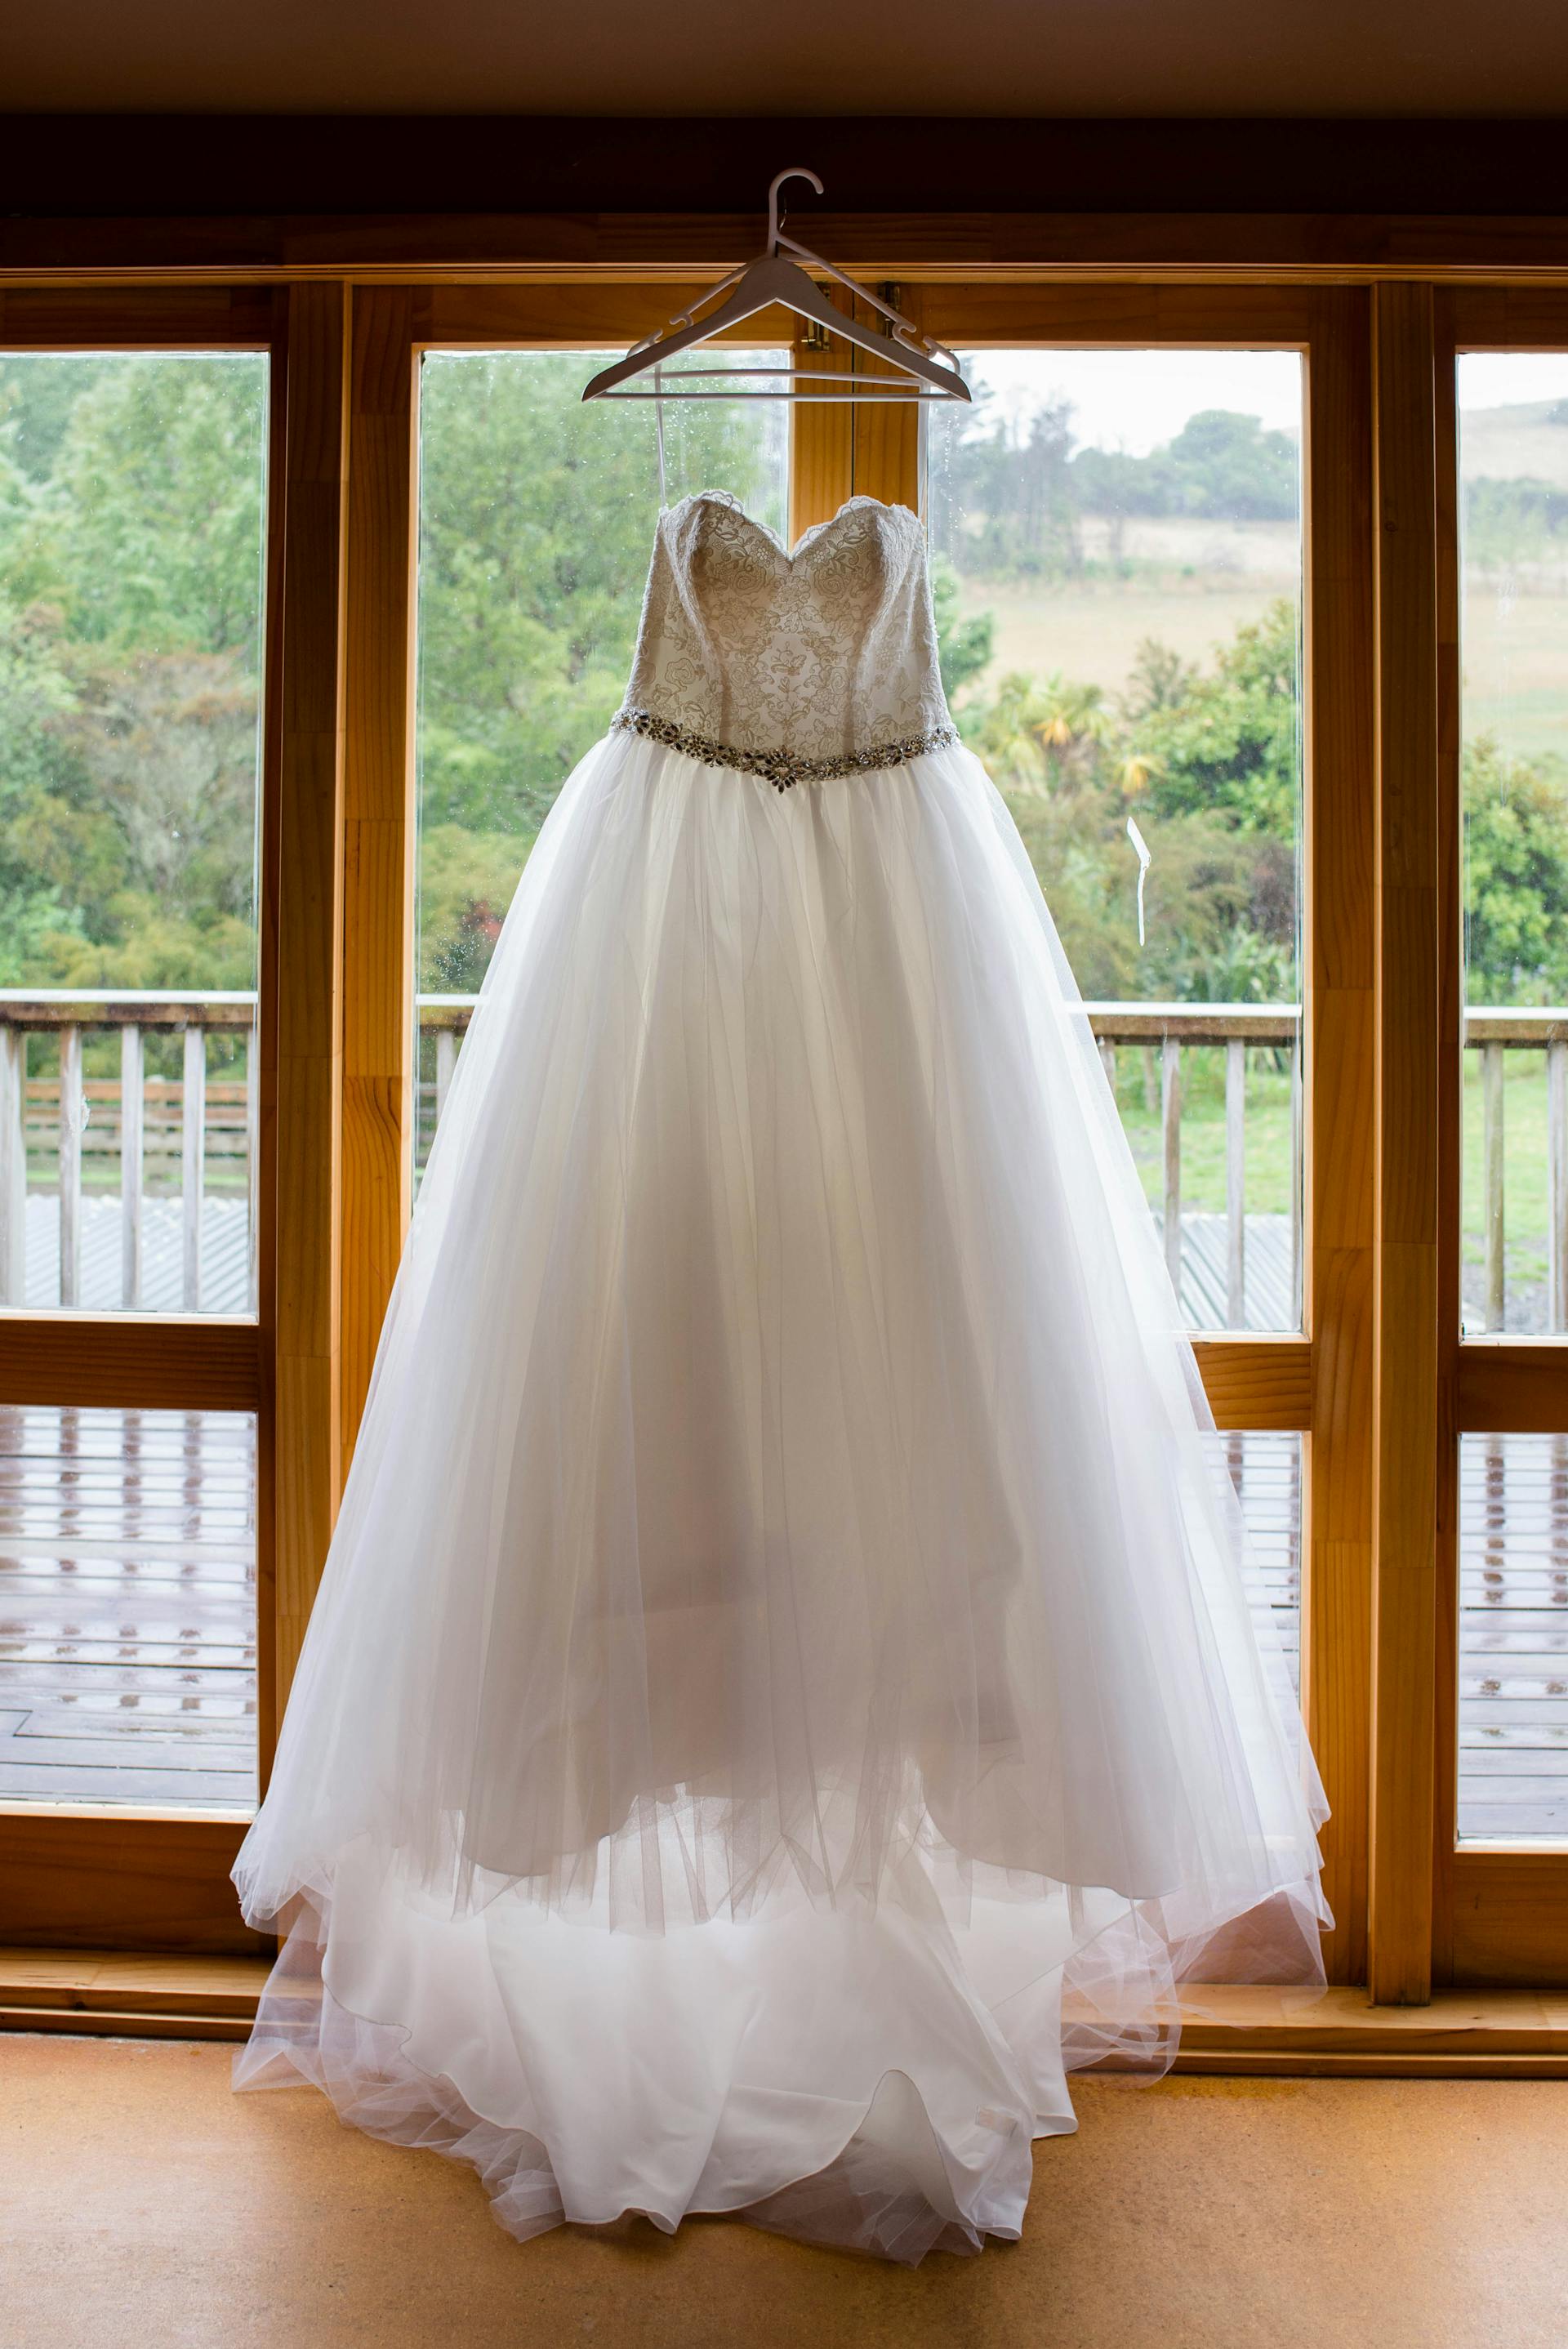 Un vestido de novia colgado de la ventana | Fuente: Pexels